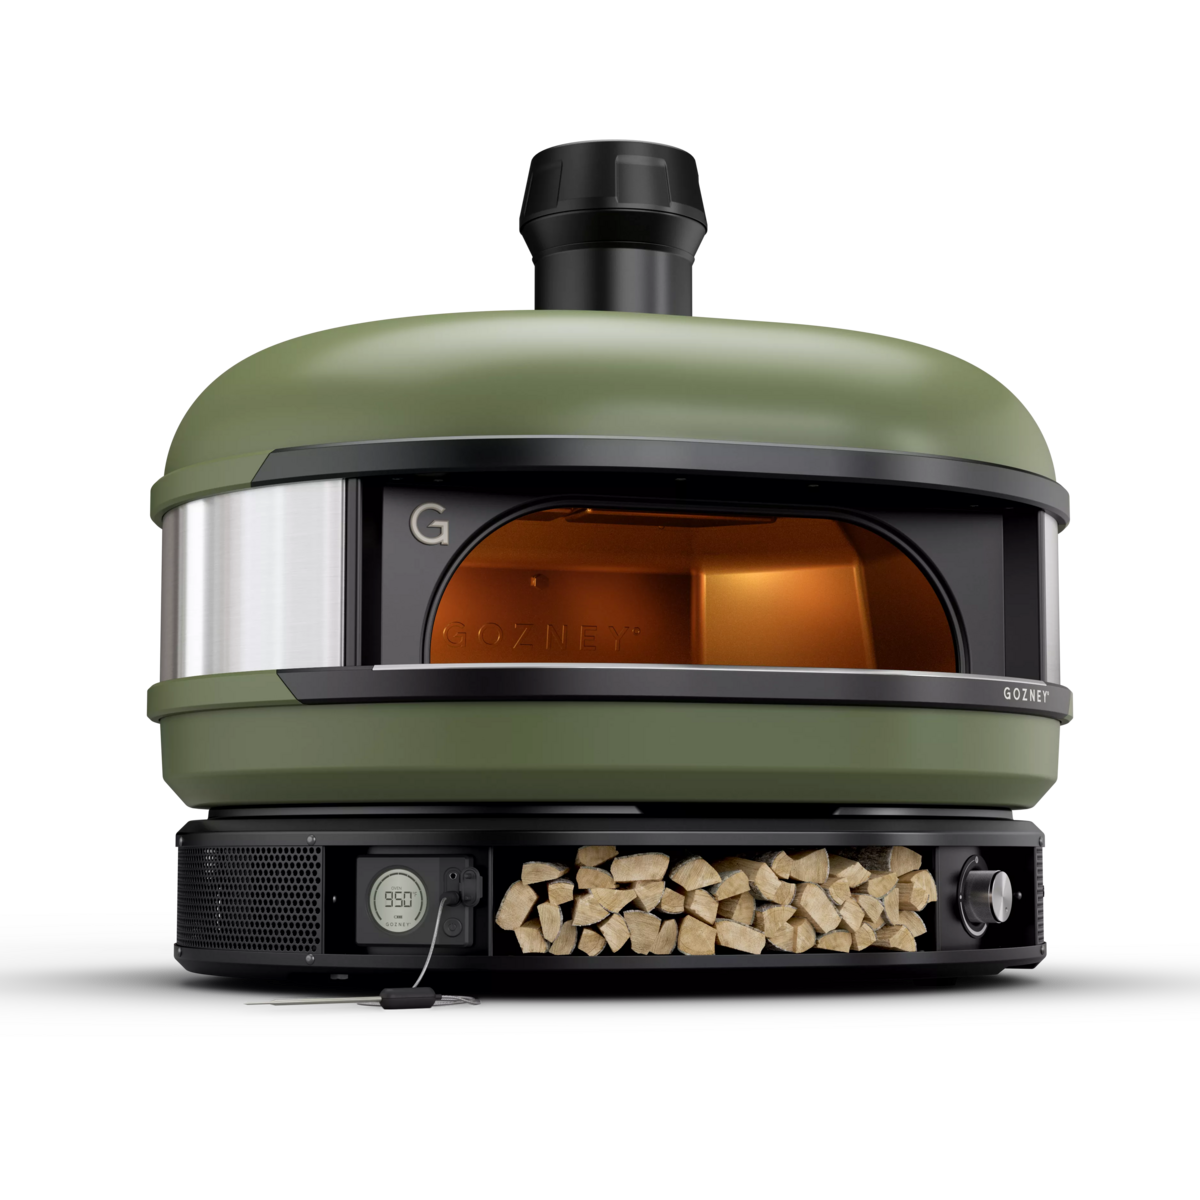 Gozney Dome Multi Fuel Pizza Oven - Olive Color